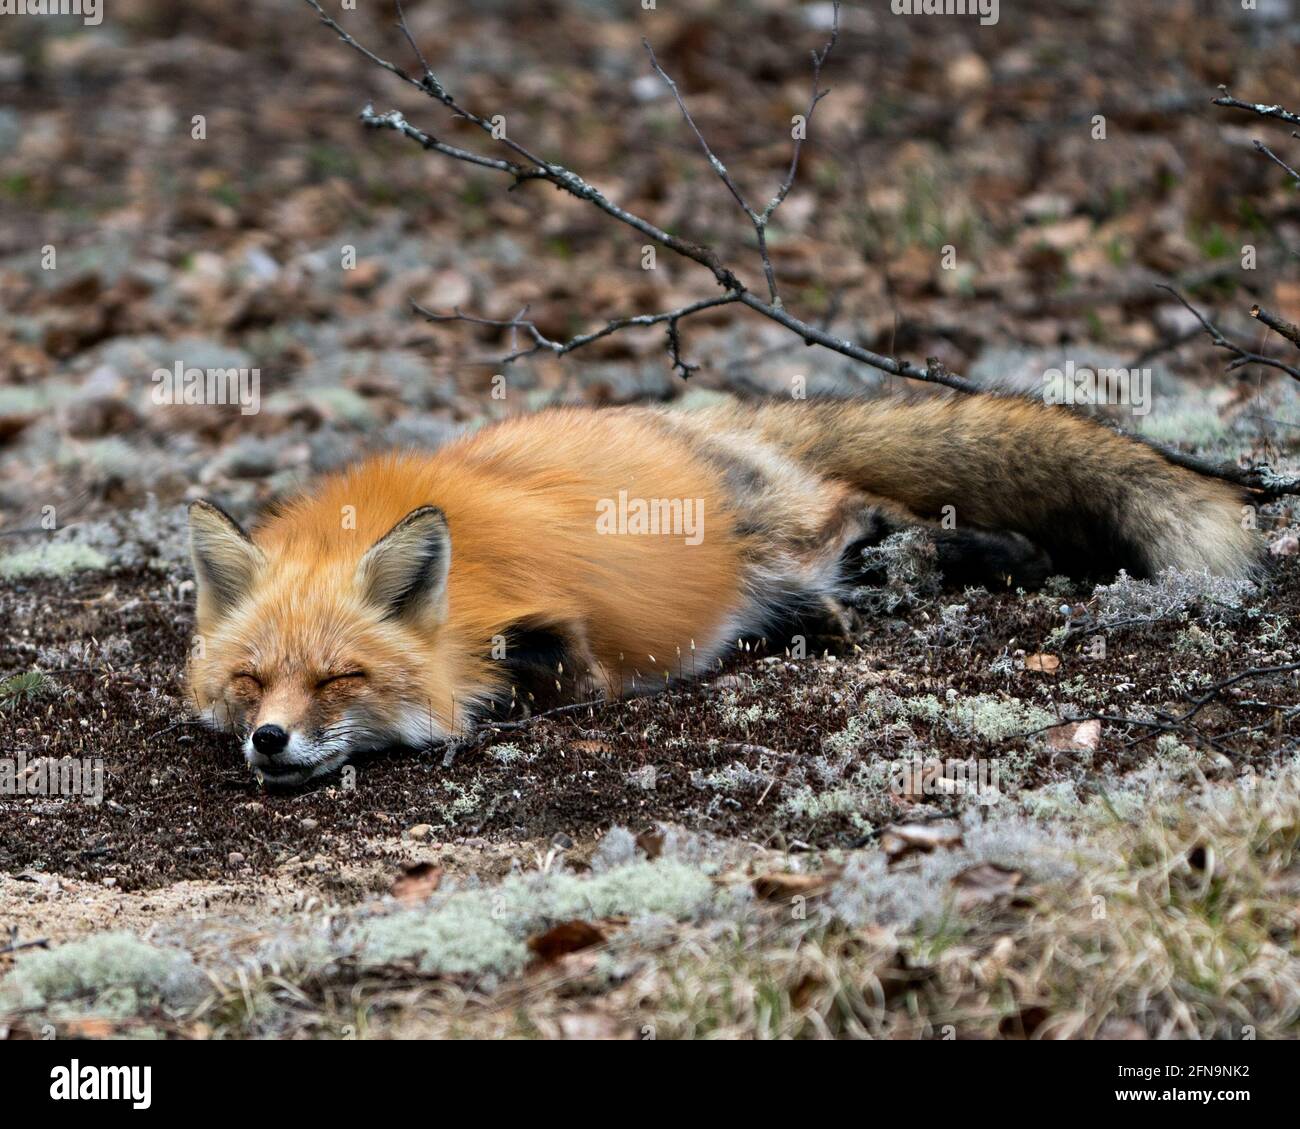 Volpe rossa che dorme su un terreno di muschio bianco nel suo ambiente e habitat con uno sfondo sfocato. Immagine FOX. Immagine. Verticale. Foto. Foto Stock